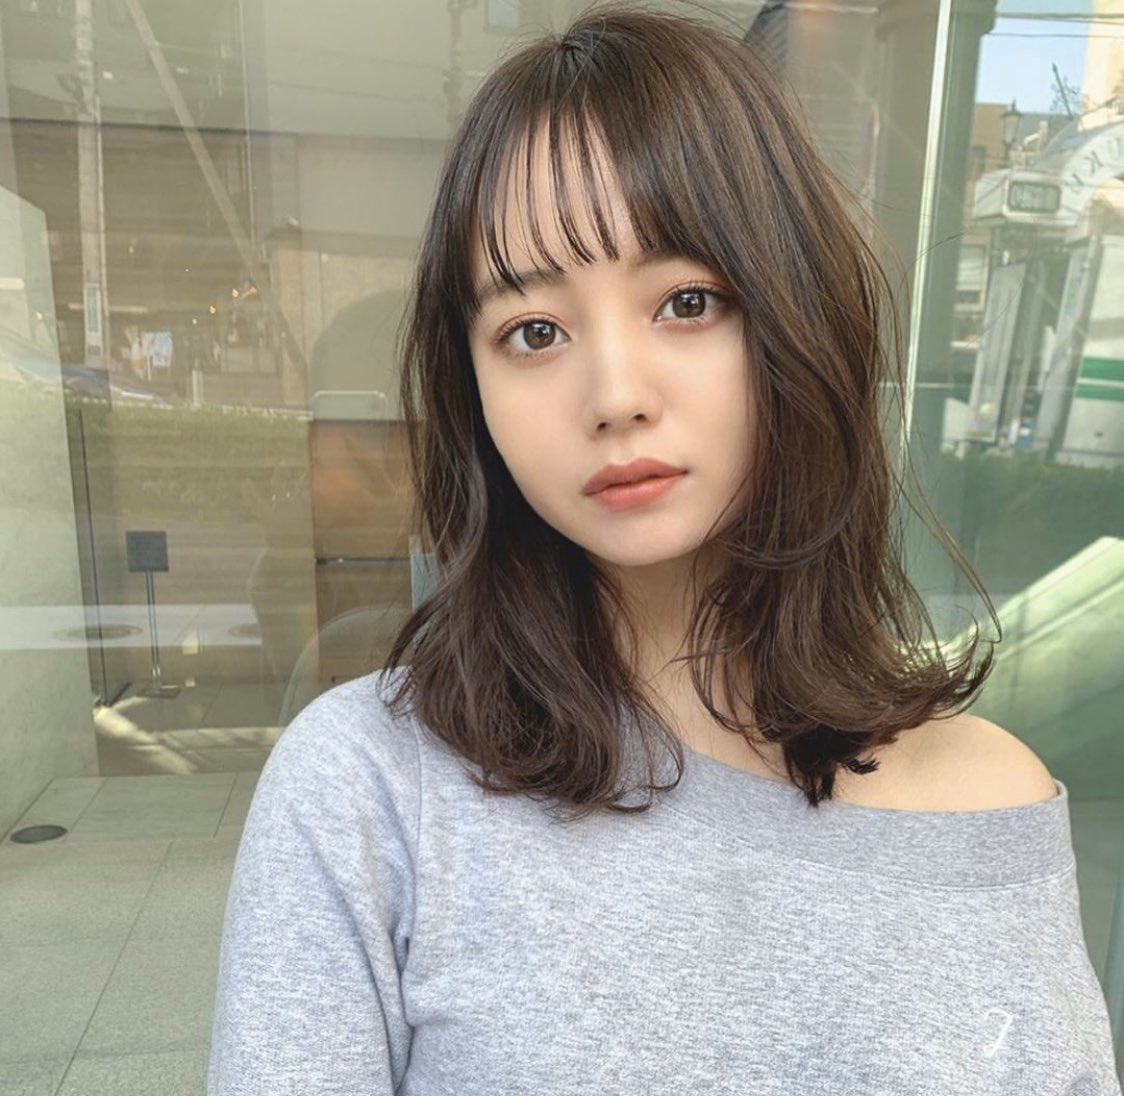 堀北真希の妹 原奈々美 Nanami は整形 昔と顔が違う 可愛くないという噂を検証